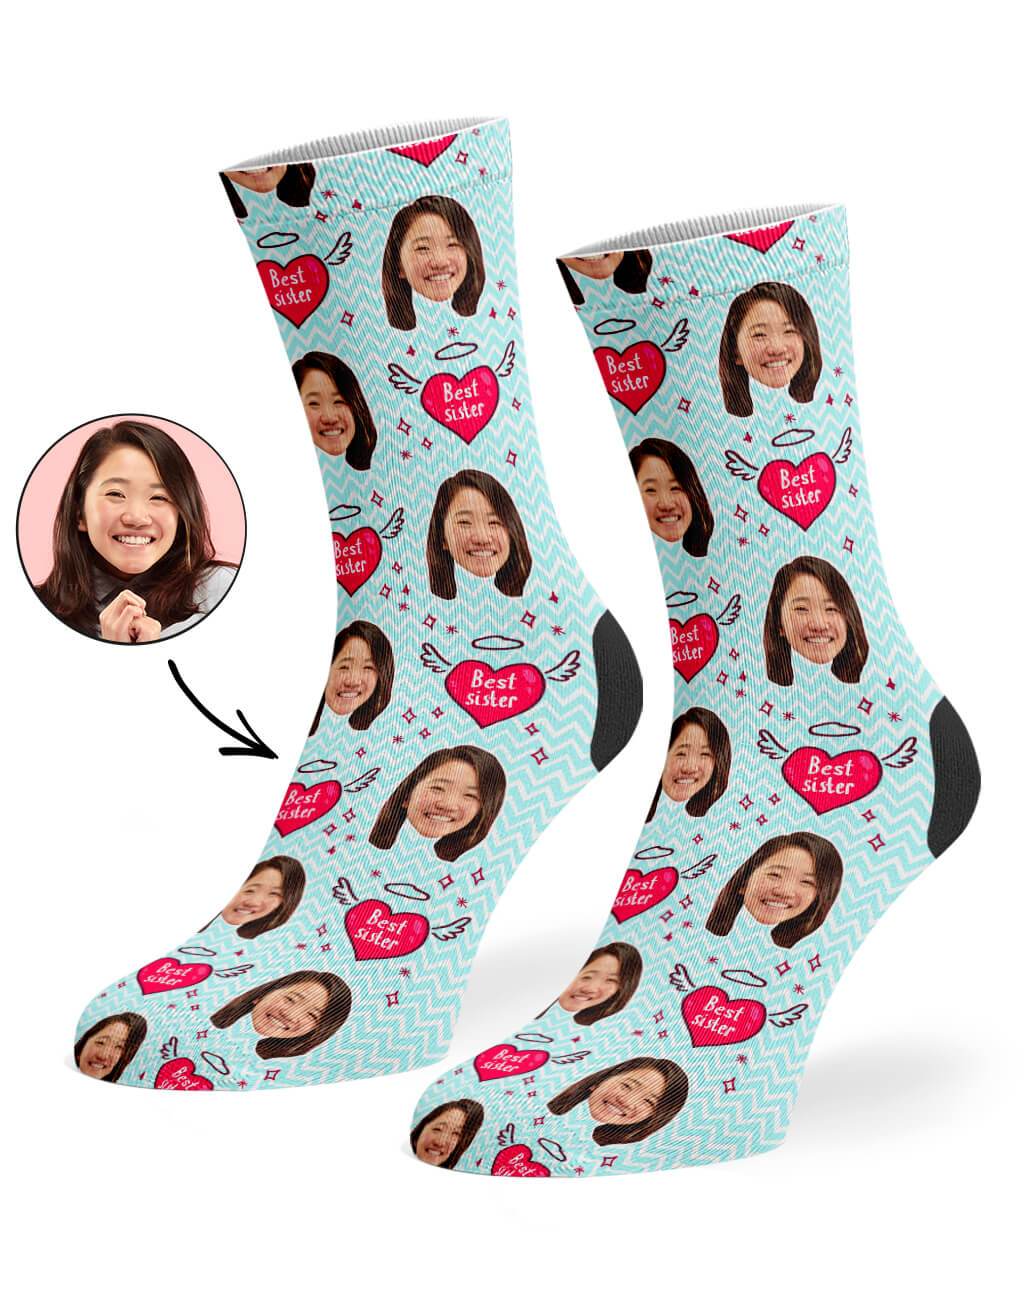 Best Sister Custom Socks